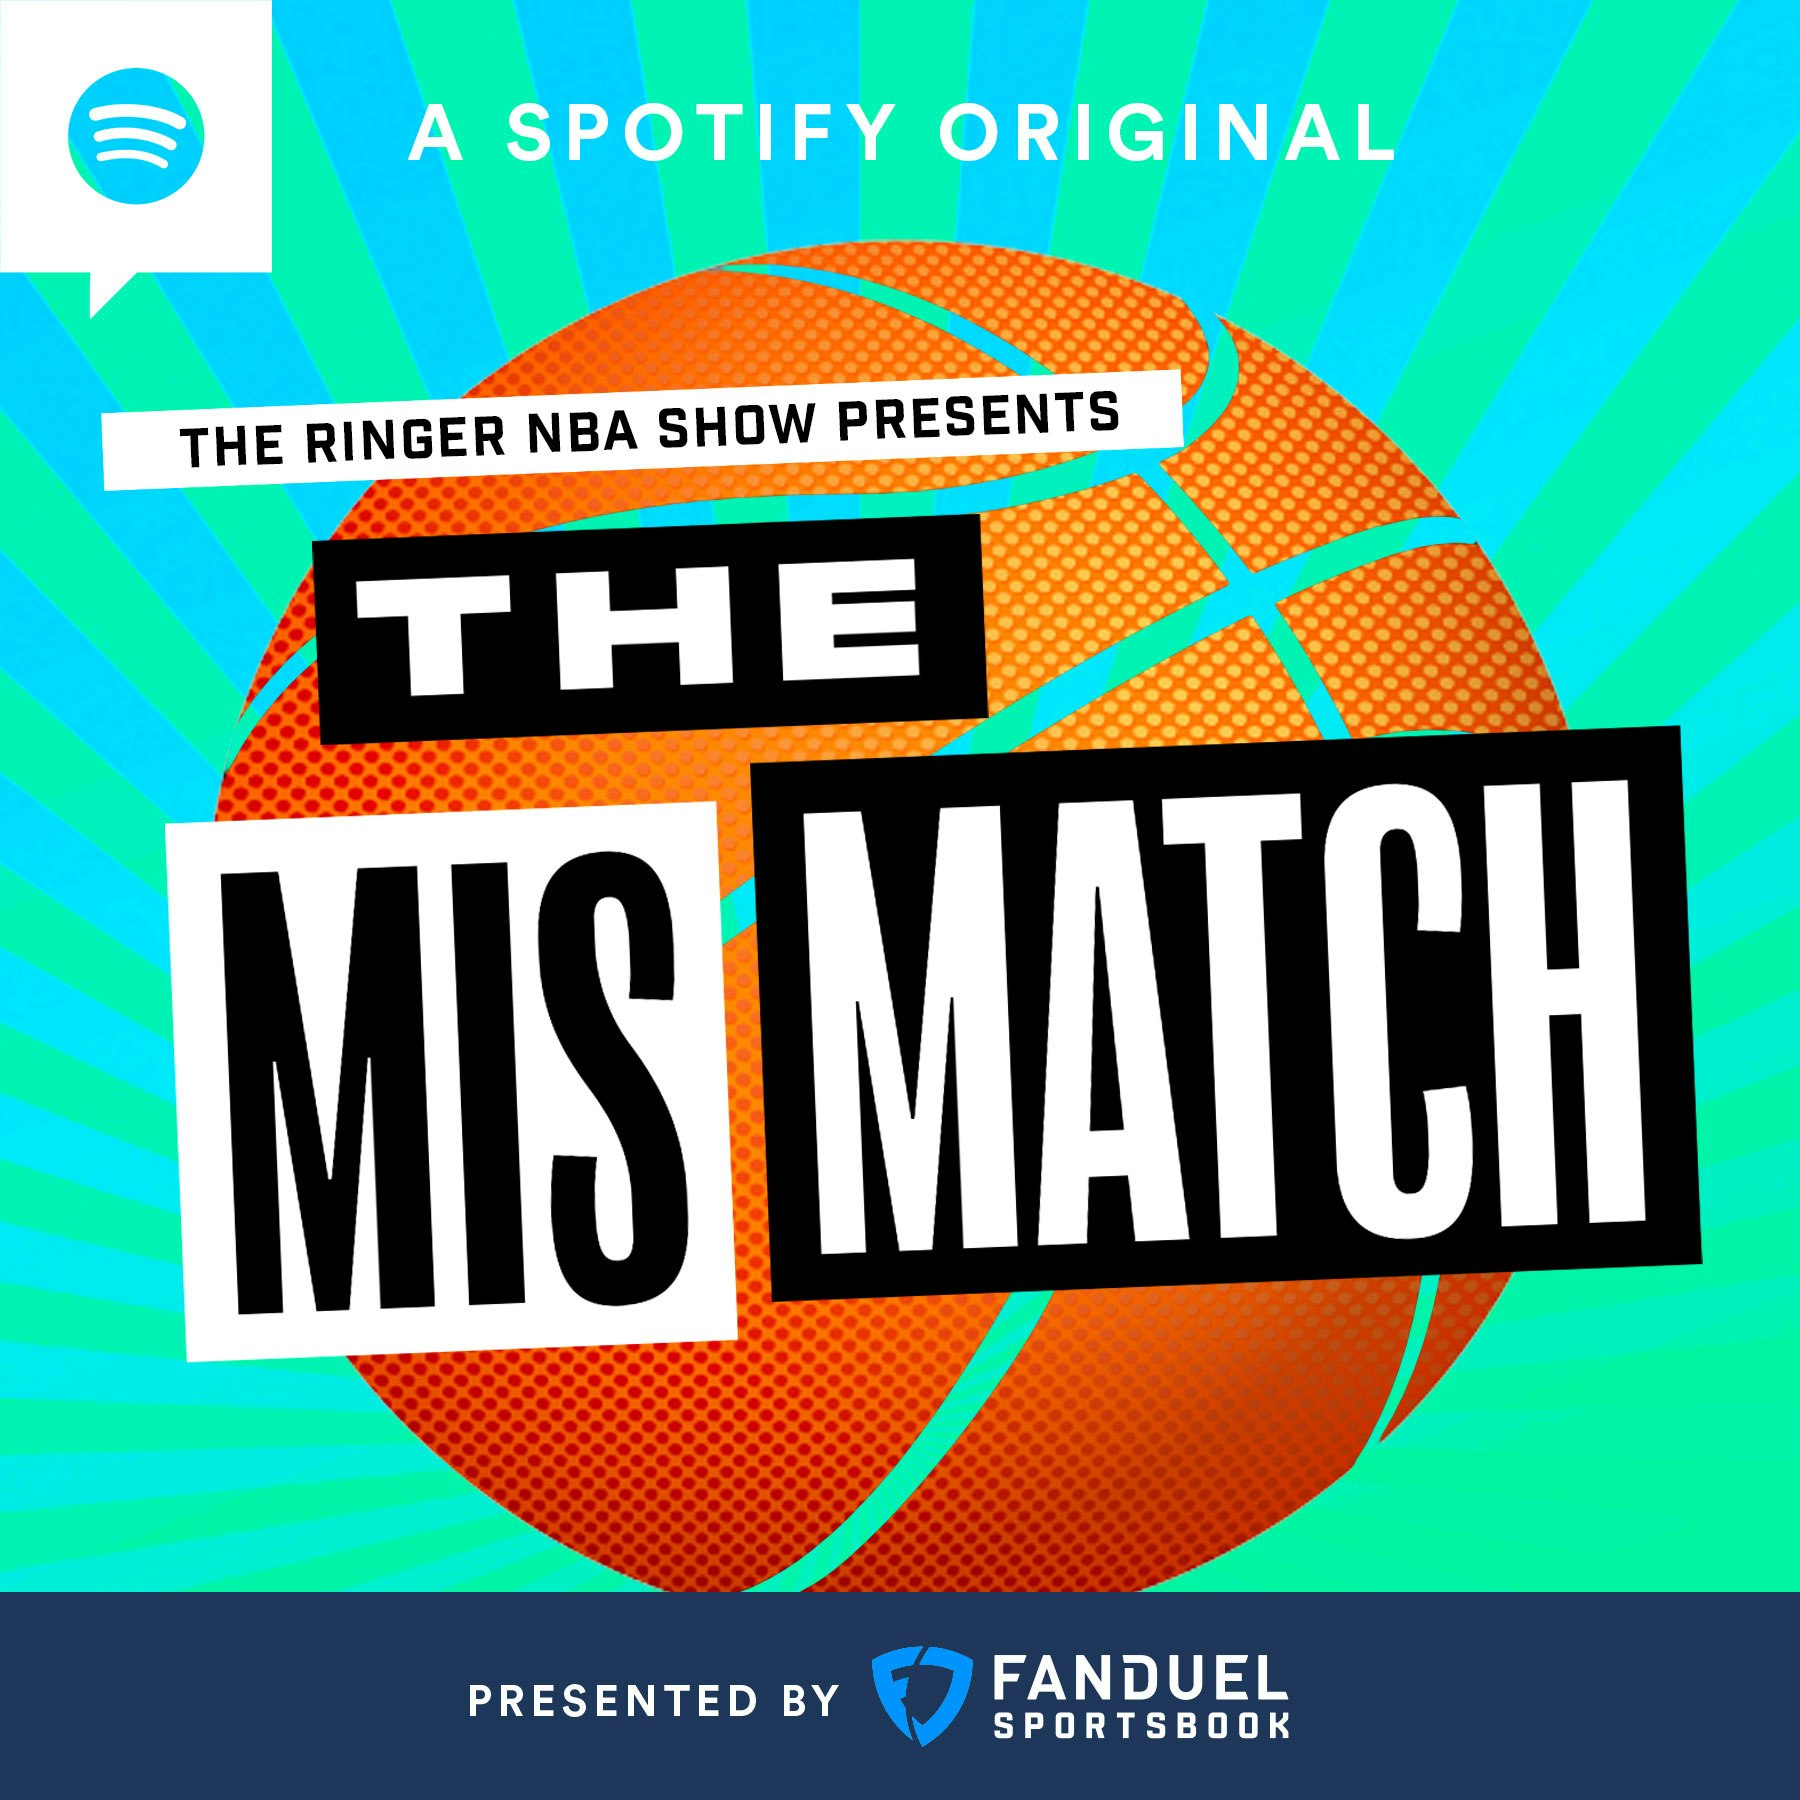 The Mismatch podcast